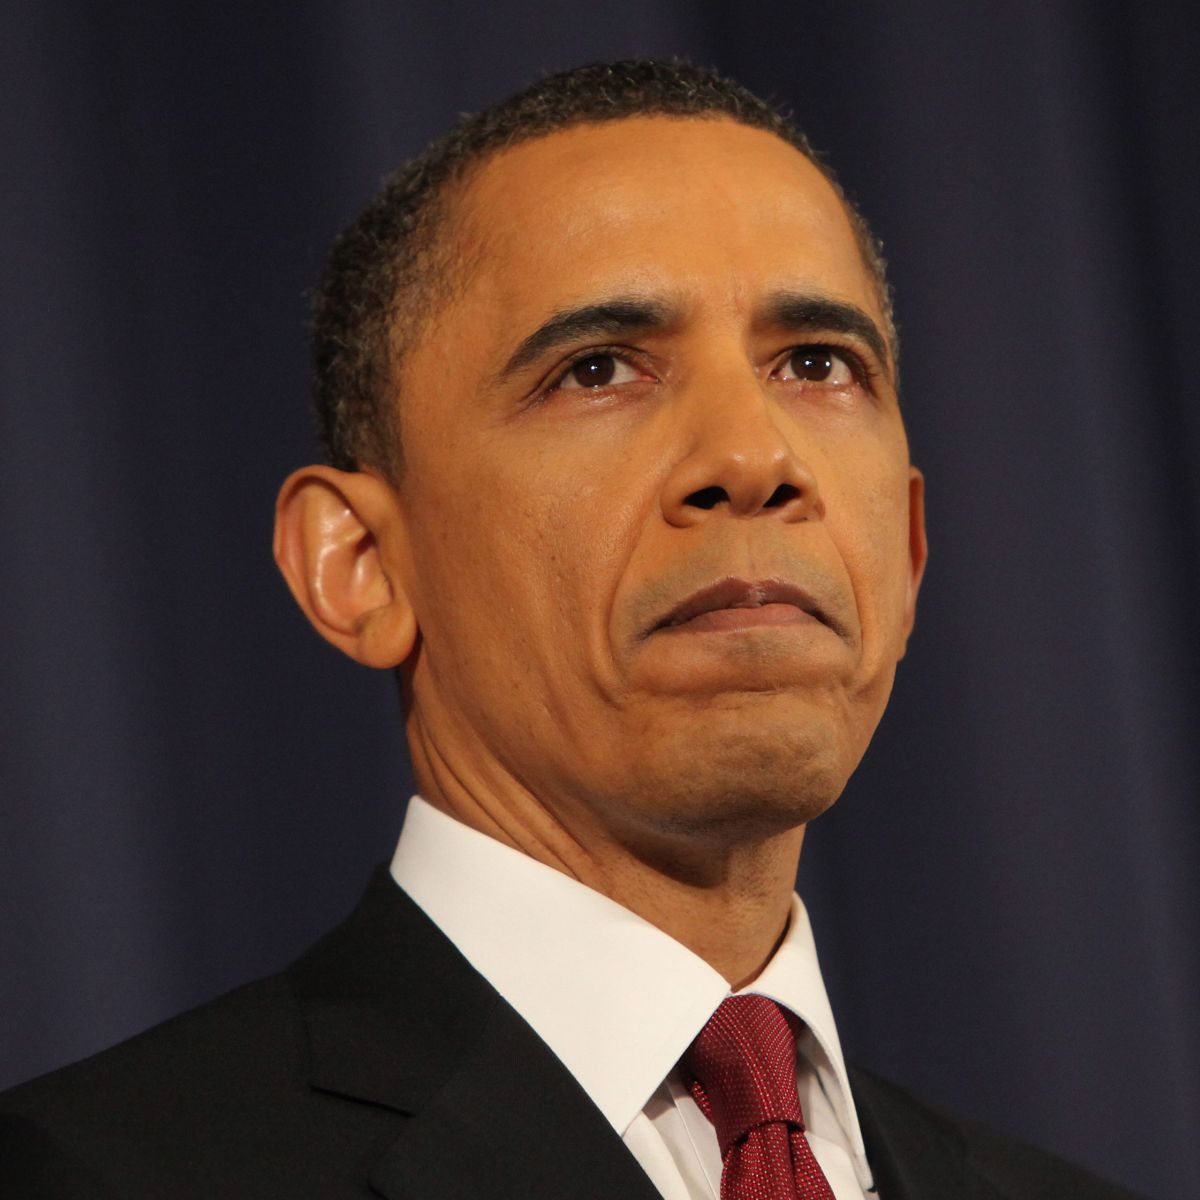 Барак Обама бе заплашен със съд, заради ликвидирането на Осама бин Ладен